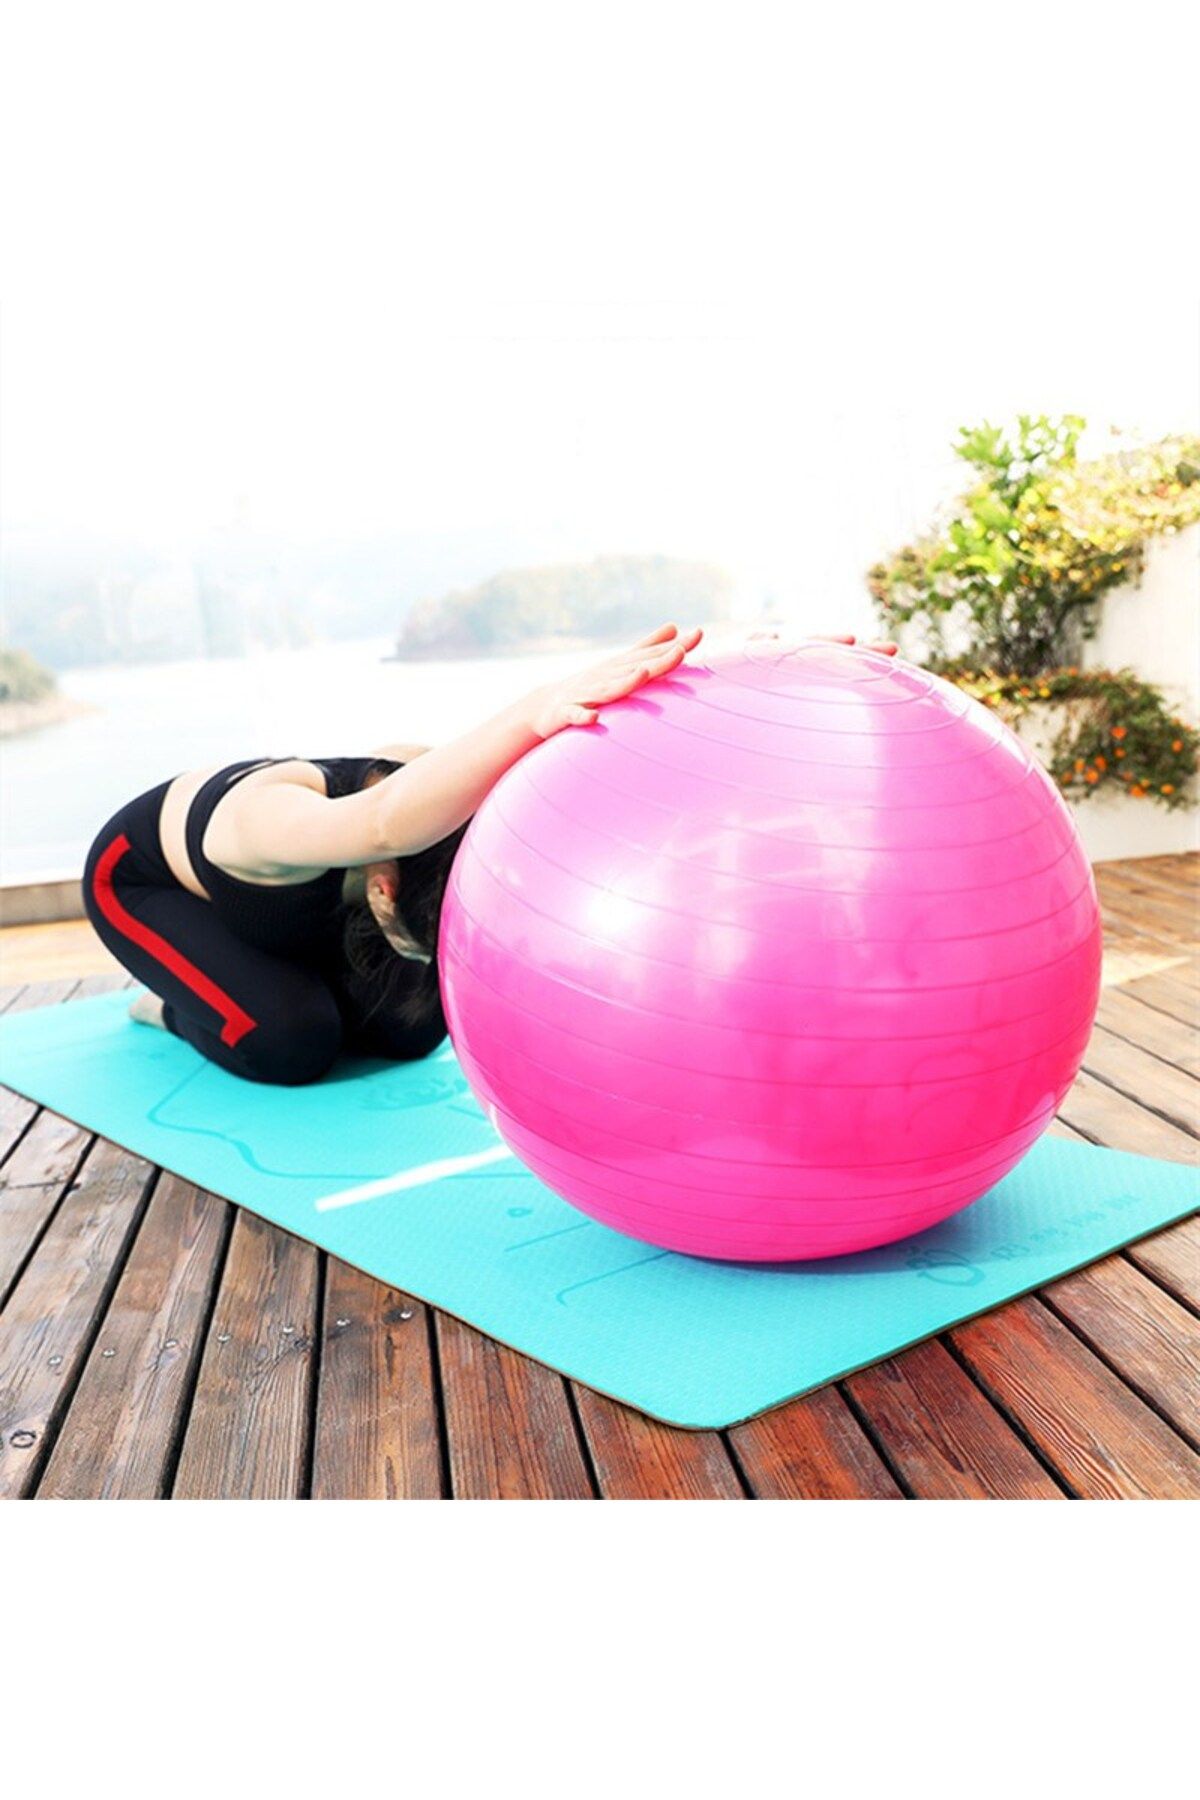 CKSpor 55 cm Pilates Topu Dayanıklı Yoga Pilates Egzersiz Topu Ve Şişirme Pompası